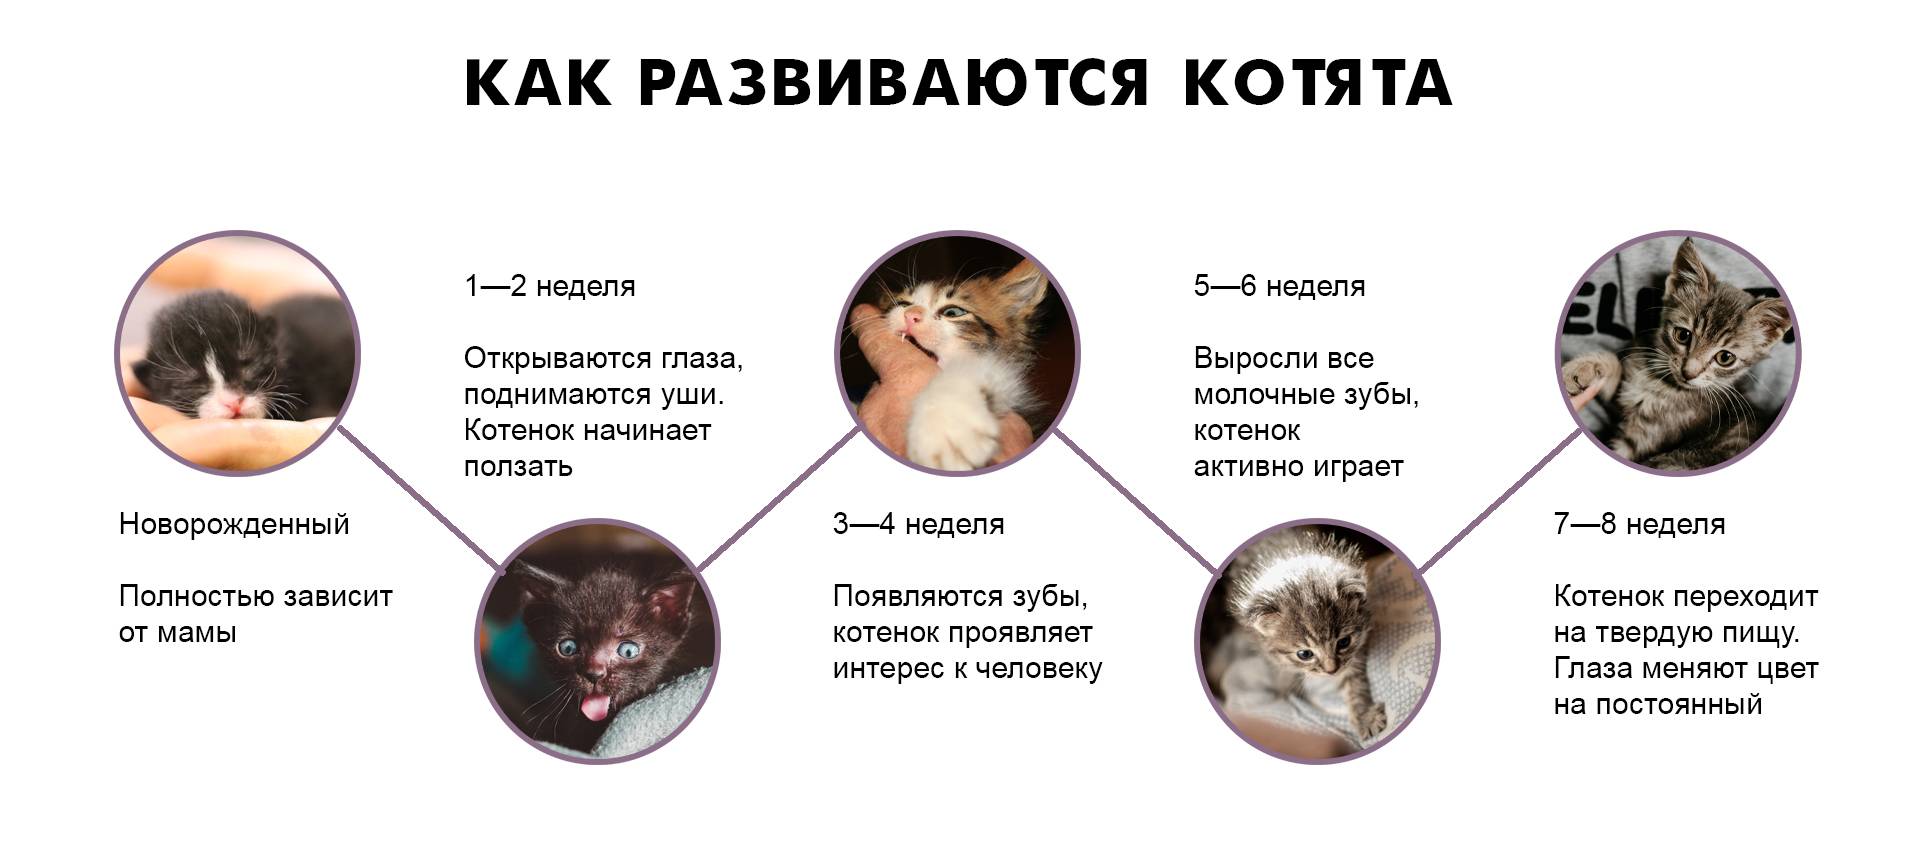 Как понять, что кошка рожает: признаки и первые предвестники | звери дома